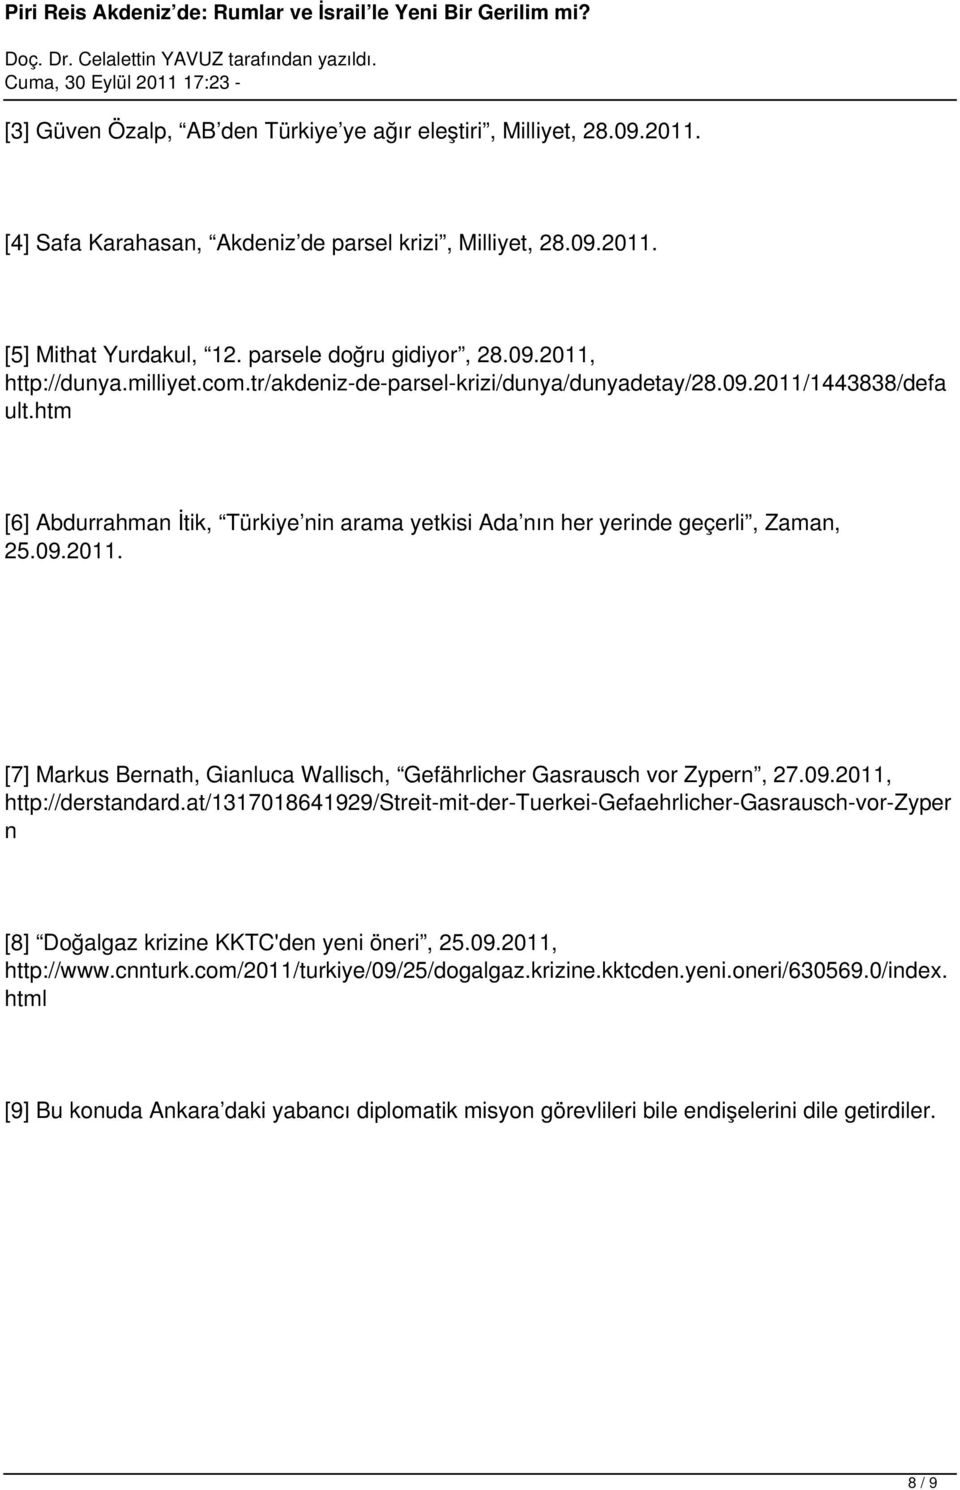 09.2011, http://derstandard.at/1317018641929/streit-mit-der-tuerkei-gefaehrlicher-gasrausch-vor-zyper n [8] Doğalgaz krizine KKTC'den yeni öneri, 25.09.2011, http://www.cnnturk.